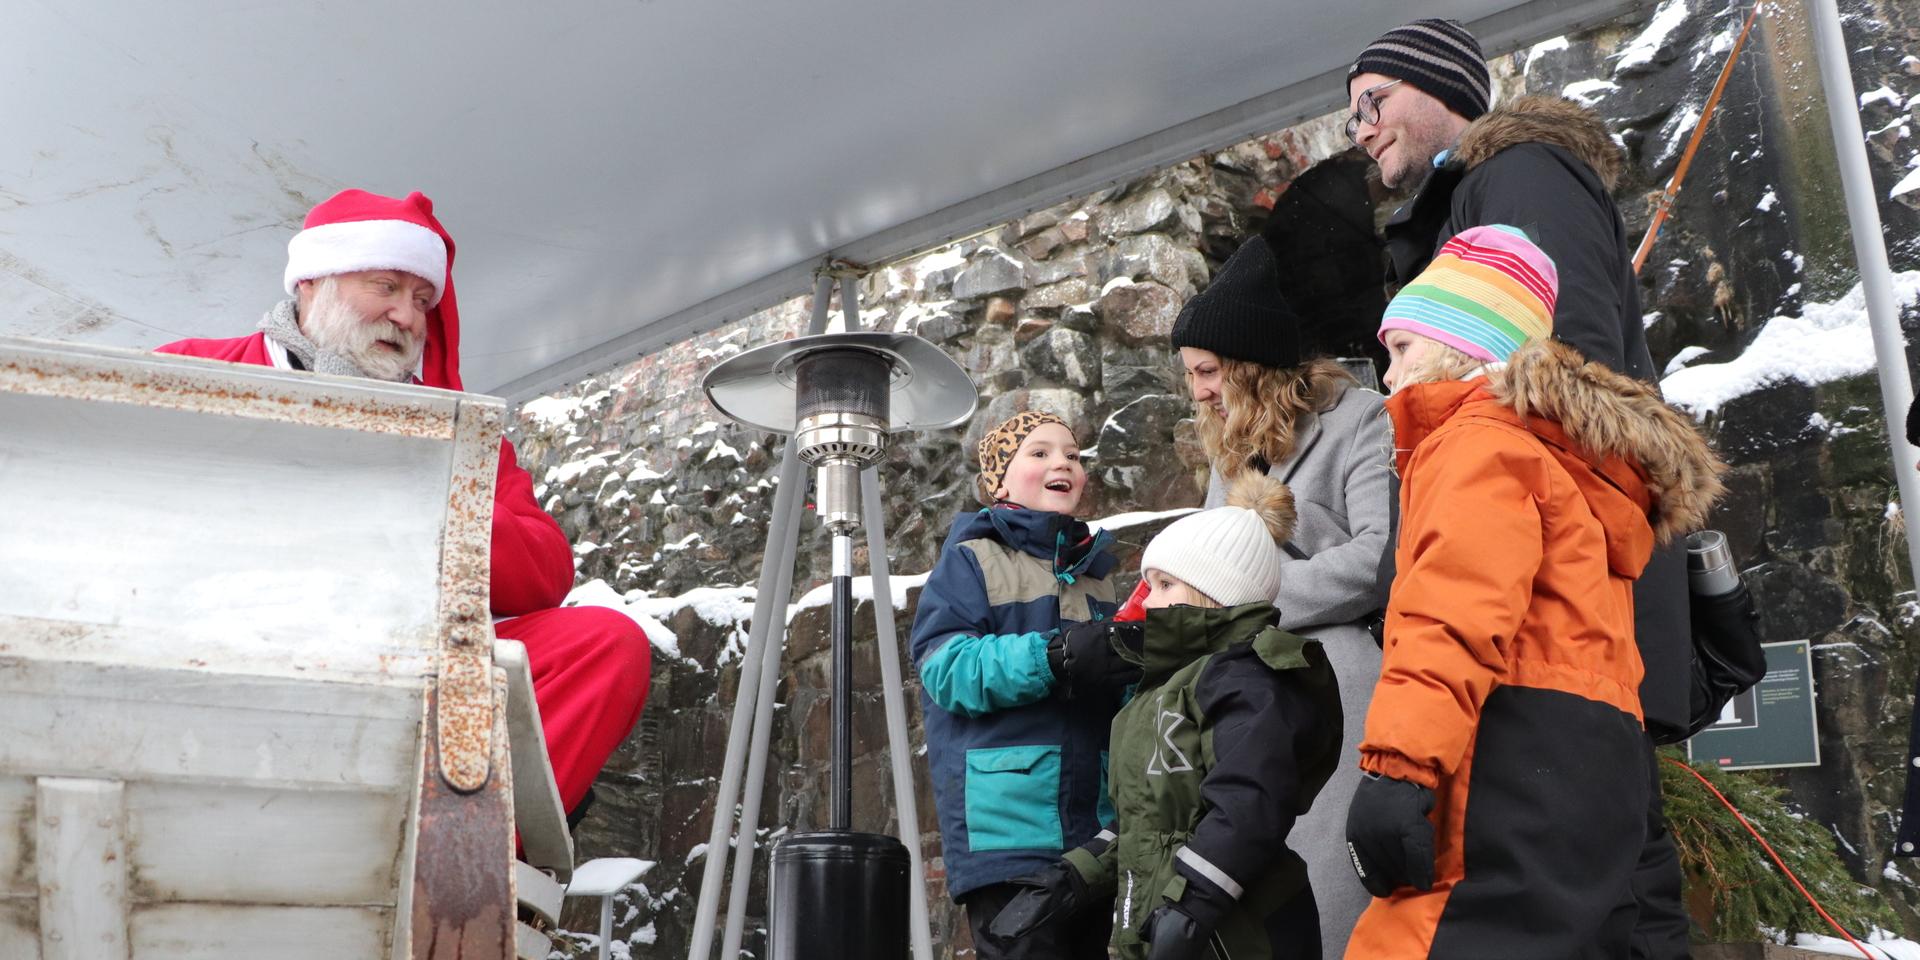 På julmarknaden i fästningen träffar syskonen Vidar, Nellie och Hilma Johansson tomten, tillsammans med föräldrarna Rickard Almqvist och Sara Johansson. De fick tomteskum och gav honom sina önskelistor. 